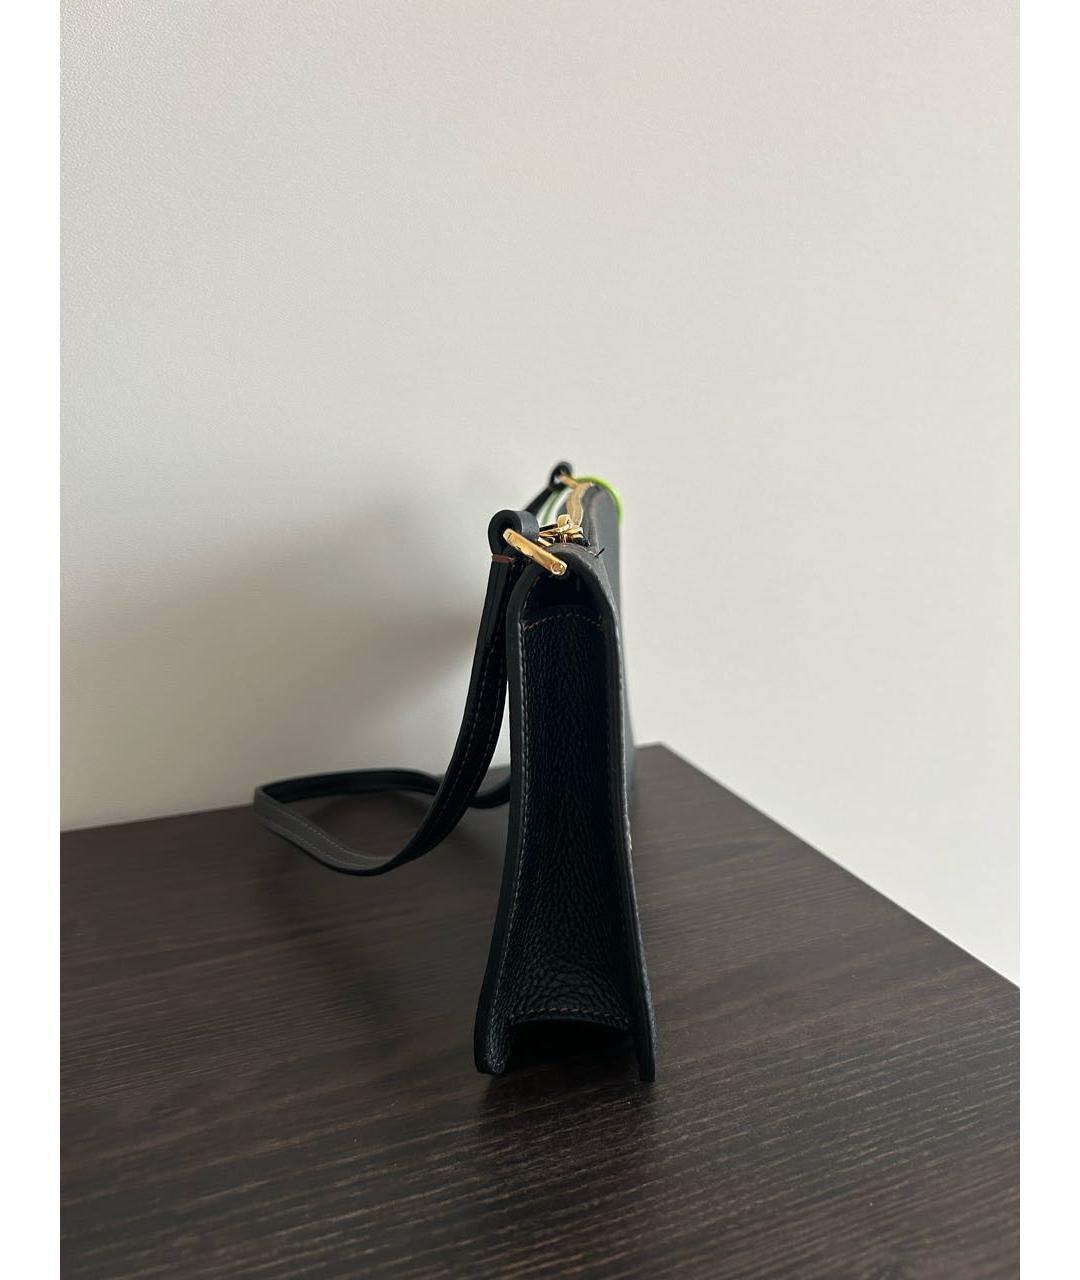 BURBERRY Черная кожаная сумка с короткими ручками, фото 2